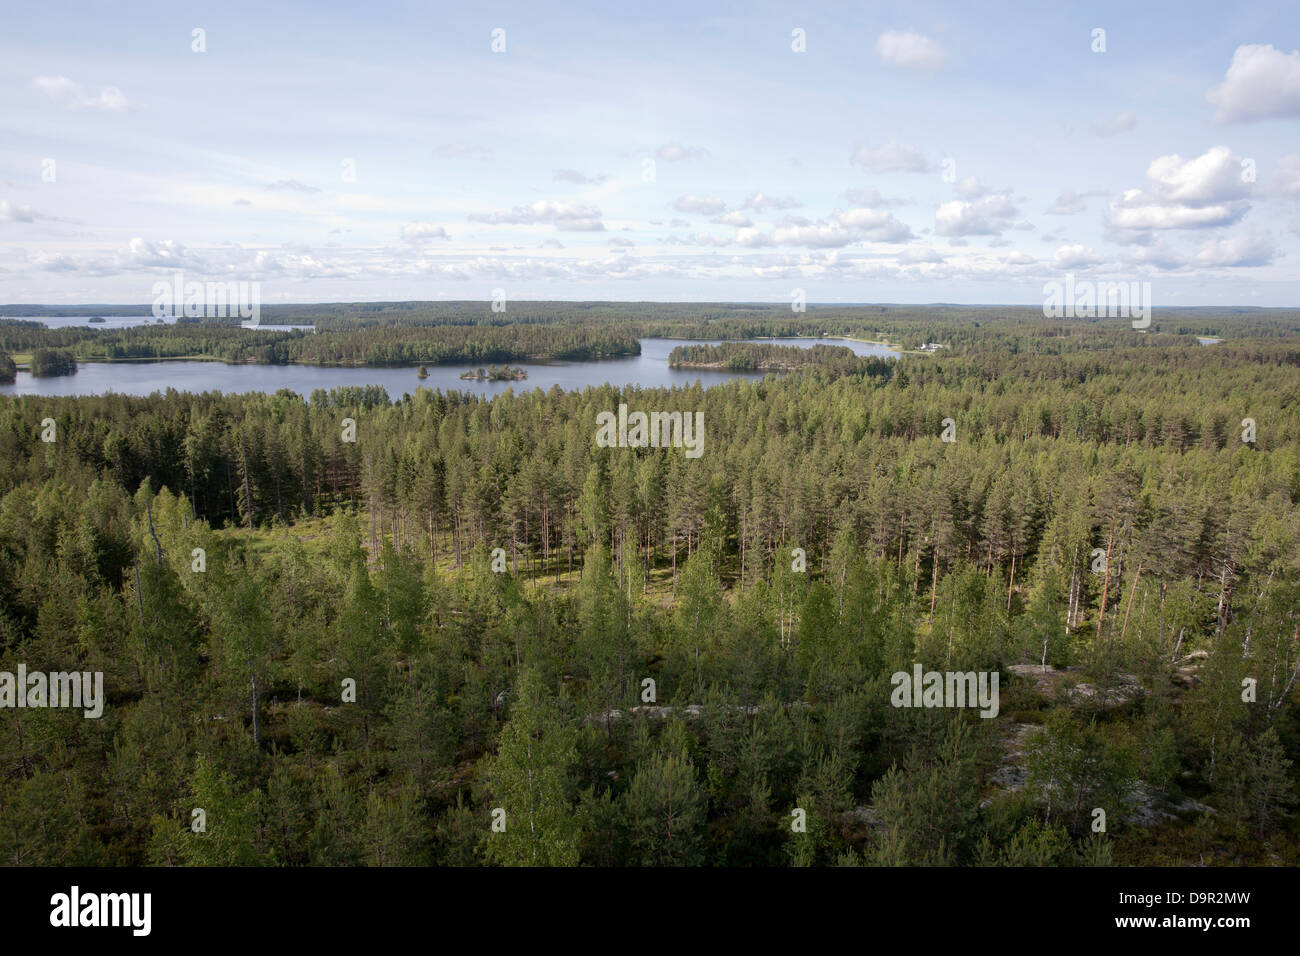 Rural landscape in Suomenniemi, Finland Stock Photo